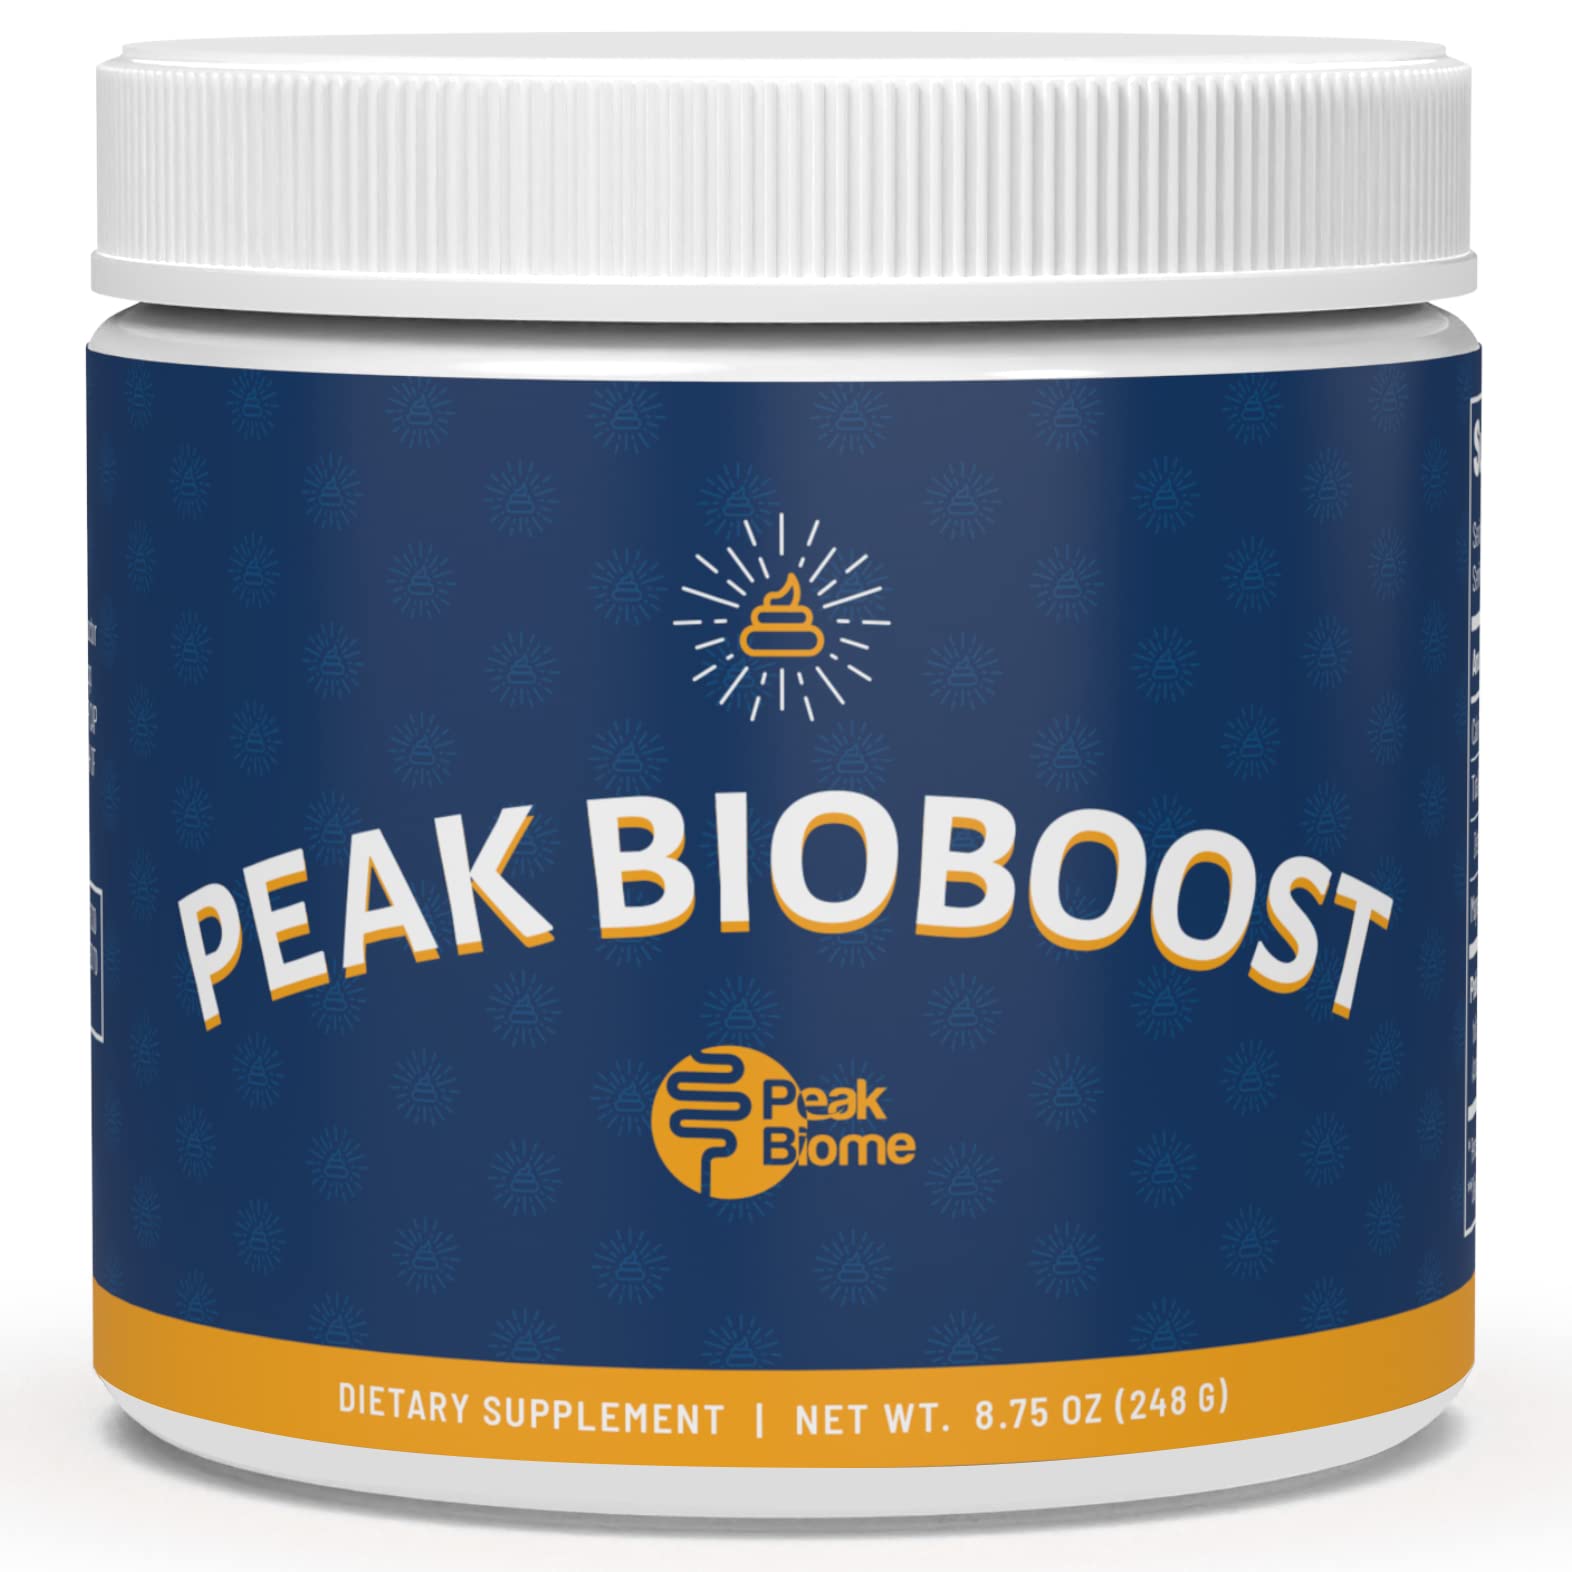 is peak bioboost legitimate